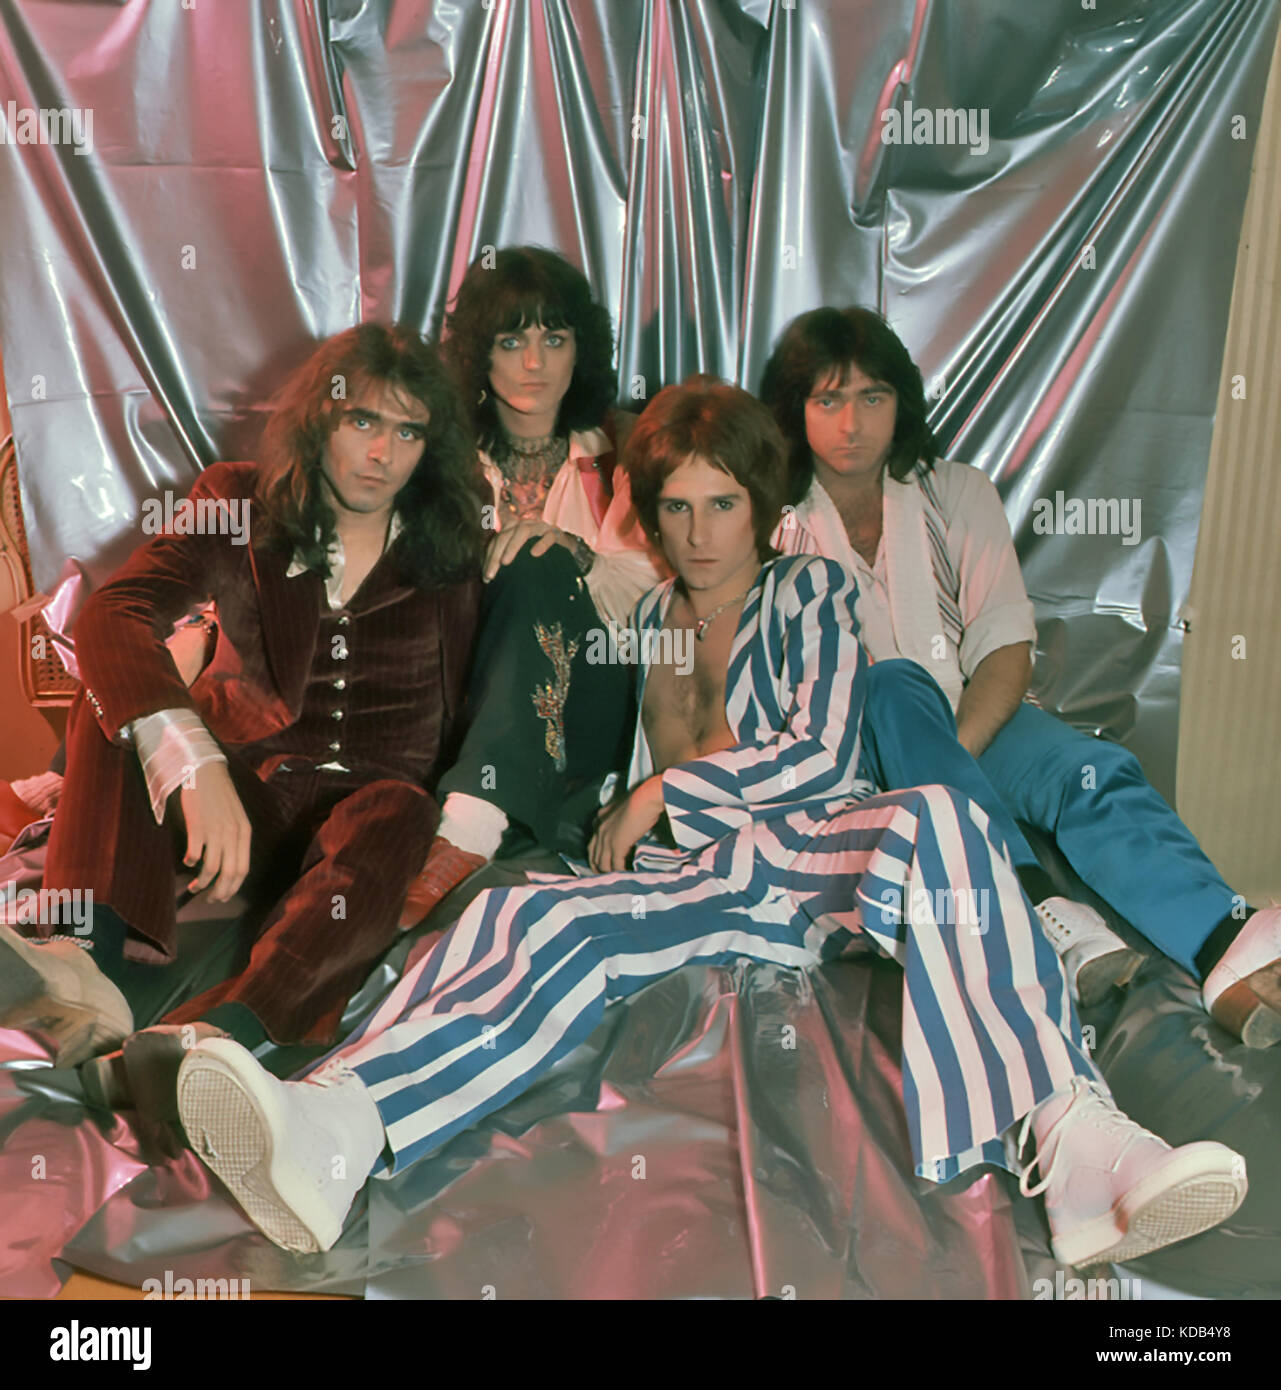 THE BABYS UK rock group in 1977. From left: Wally Stocker, Michael Corby, John Waite, Tony Brock Stock Photo